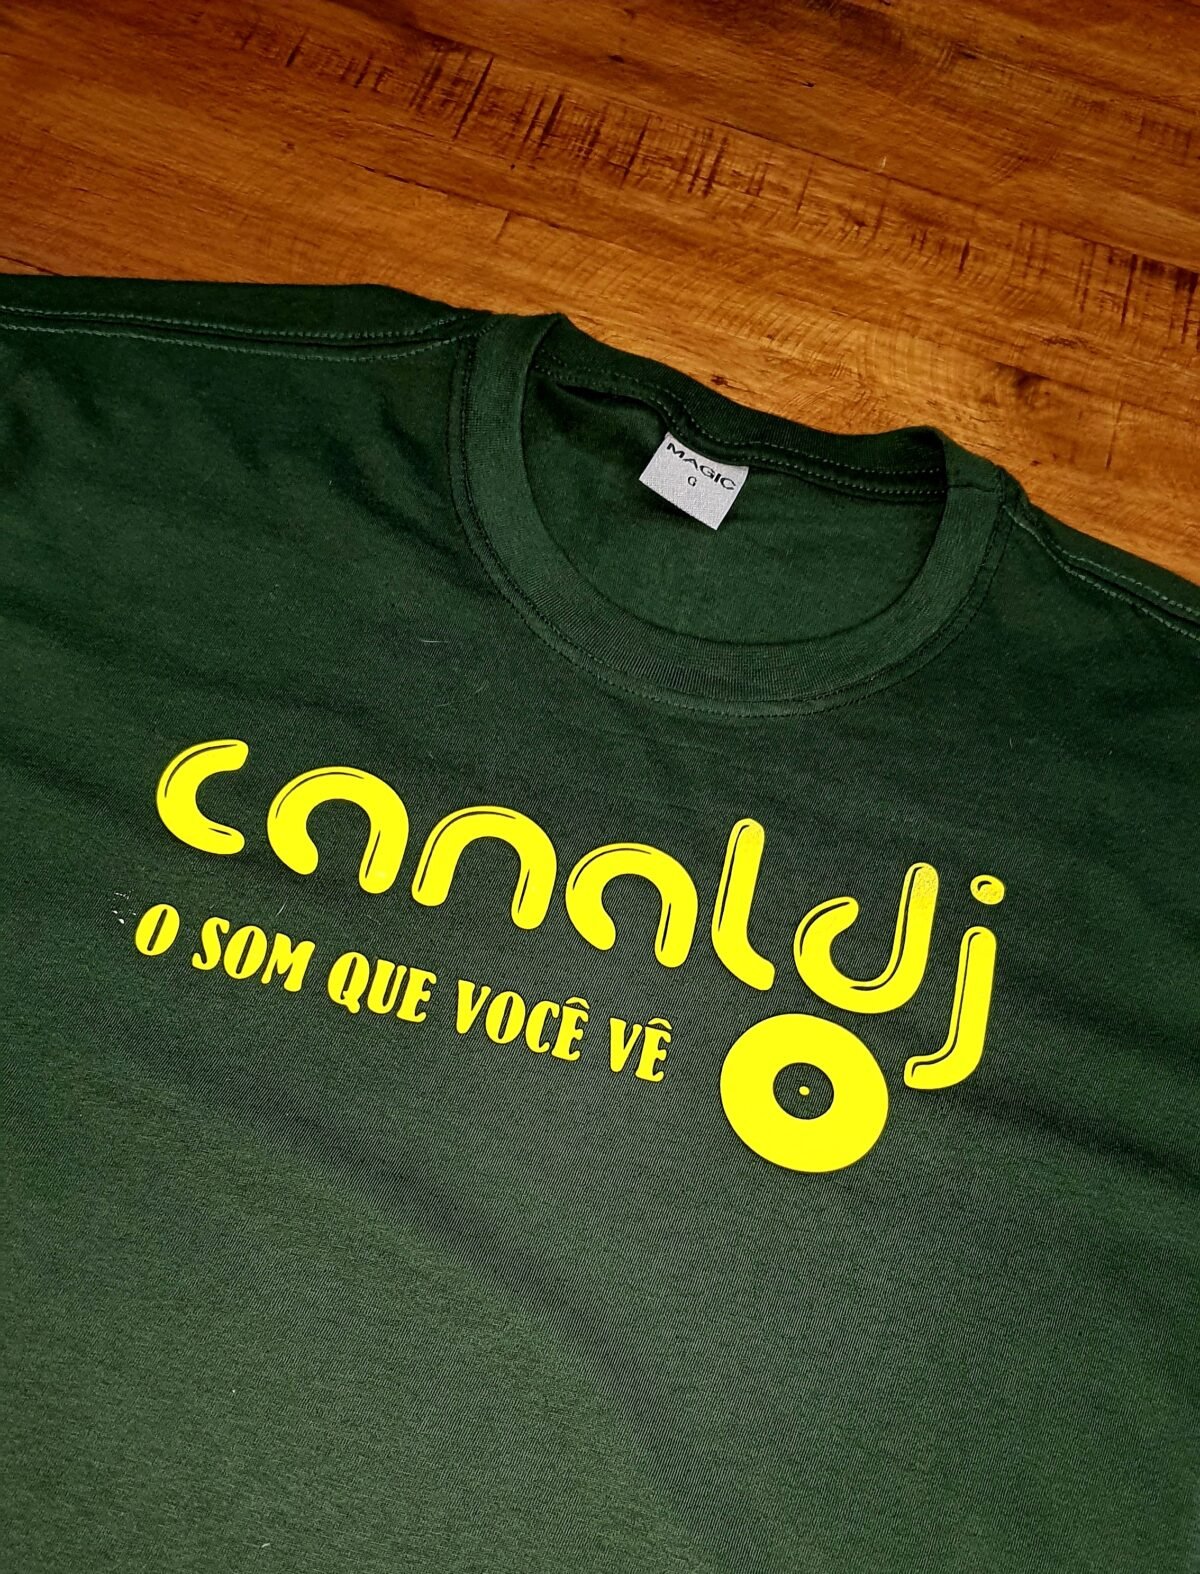 Camiseta Canal DJ - Copa do Mundo - by Bordado & Cia - @bordado.cia @canaldj